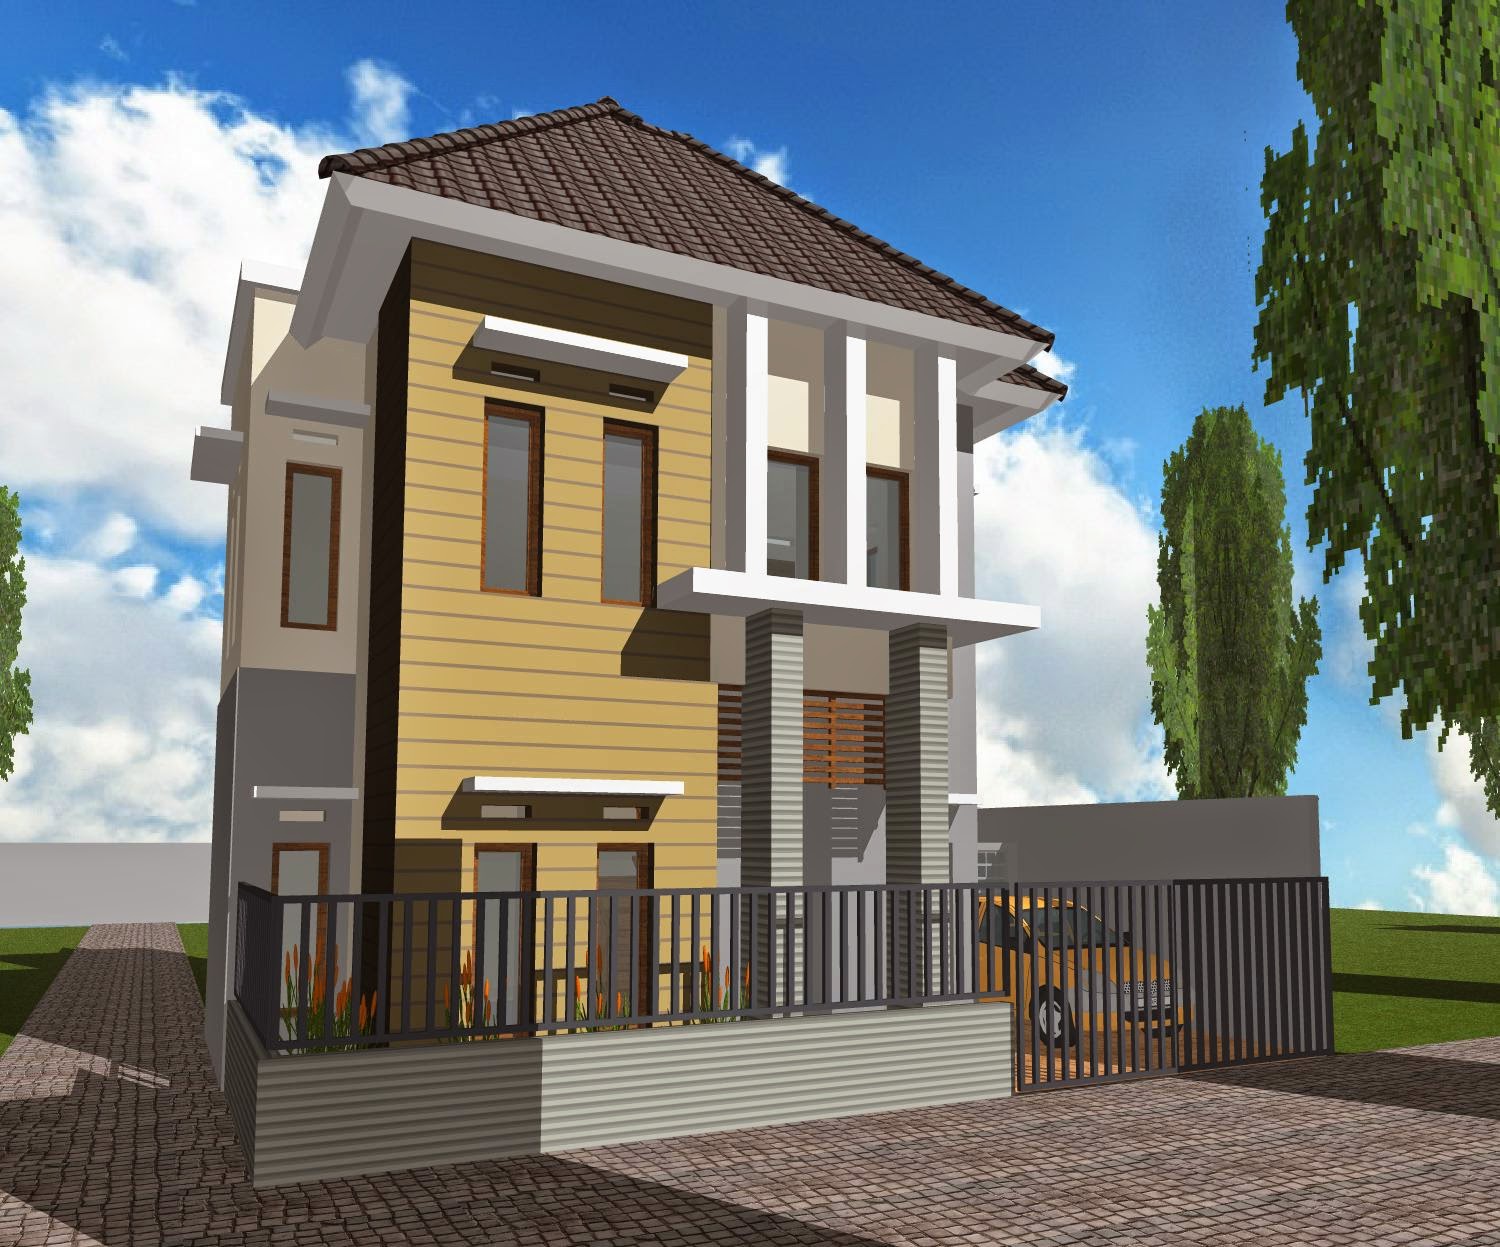 63 Desain Rumah Minimalis Ukuran 6x10 2 Lantai Desain Rumah